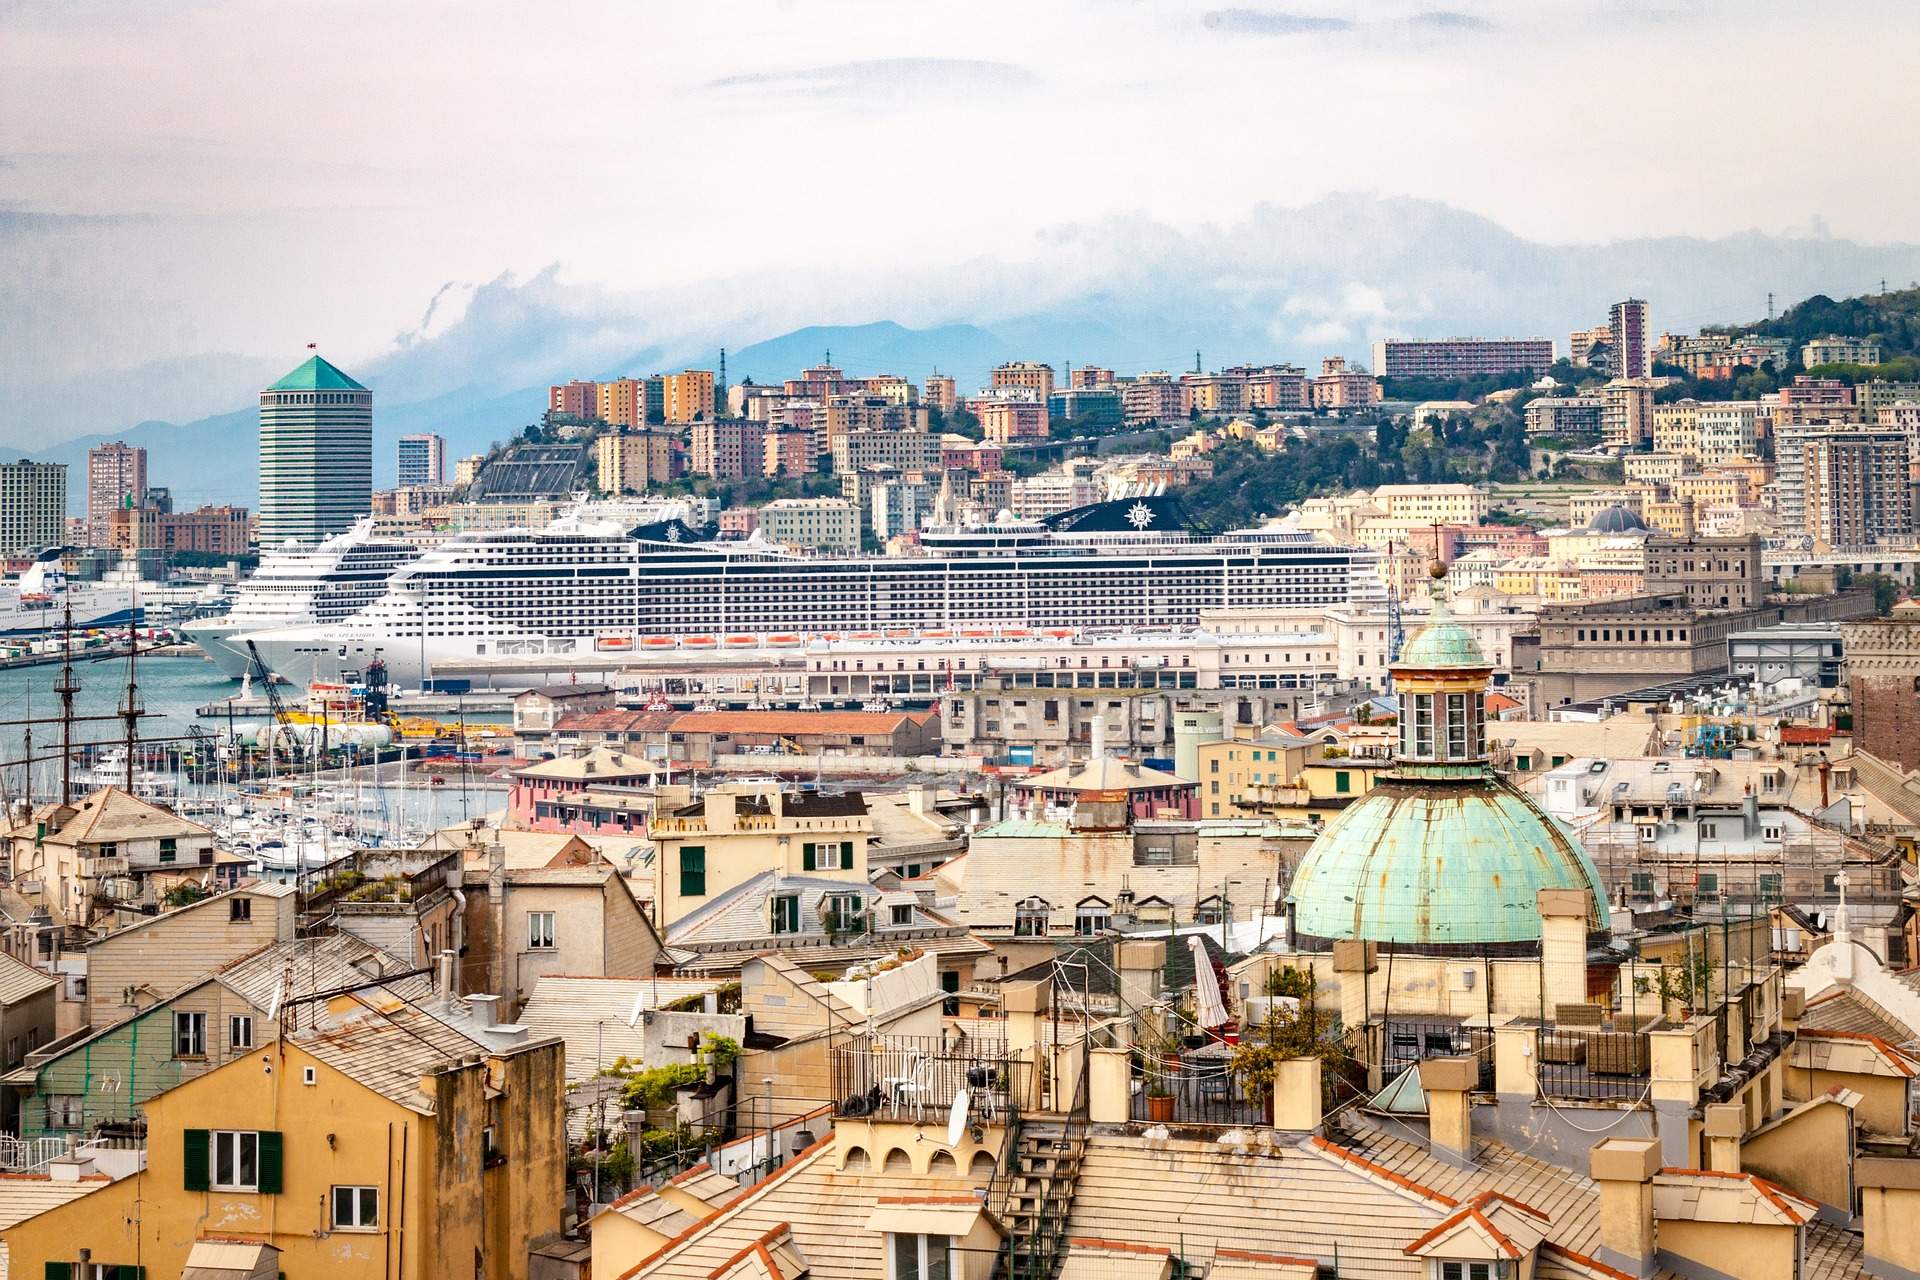 Busreis rondreis Sardinië - Genua ©Paolo Trabattoni from Pixabay